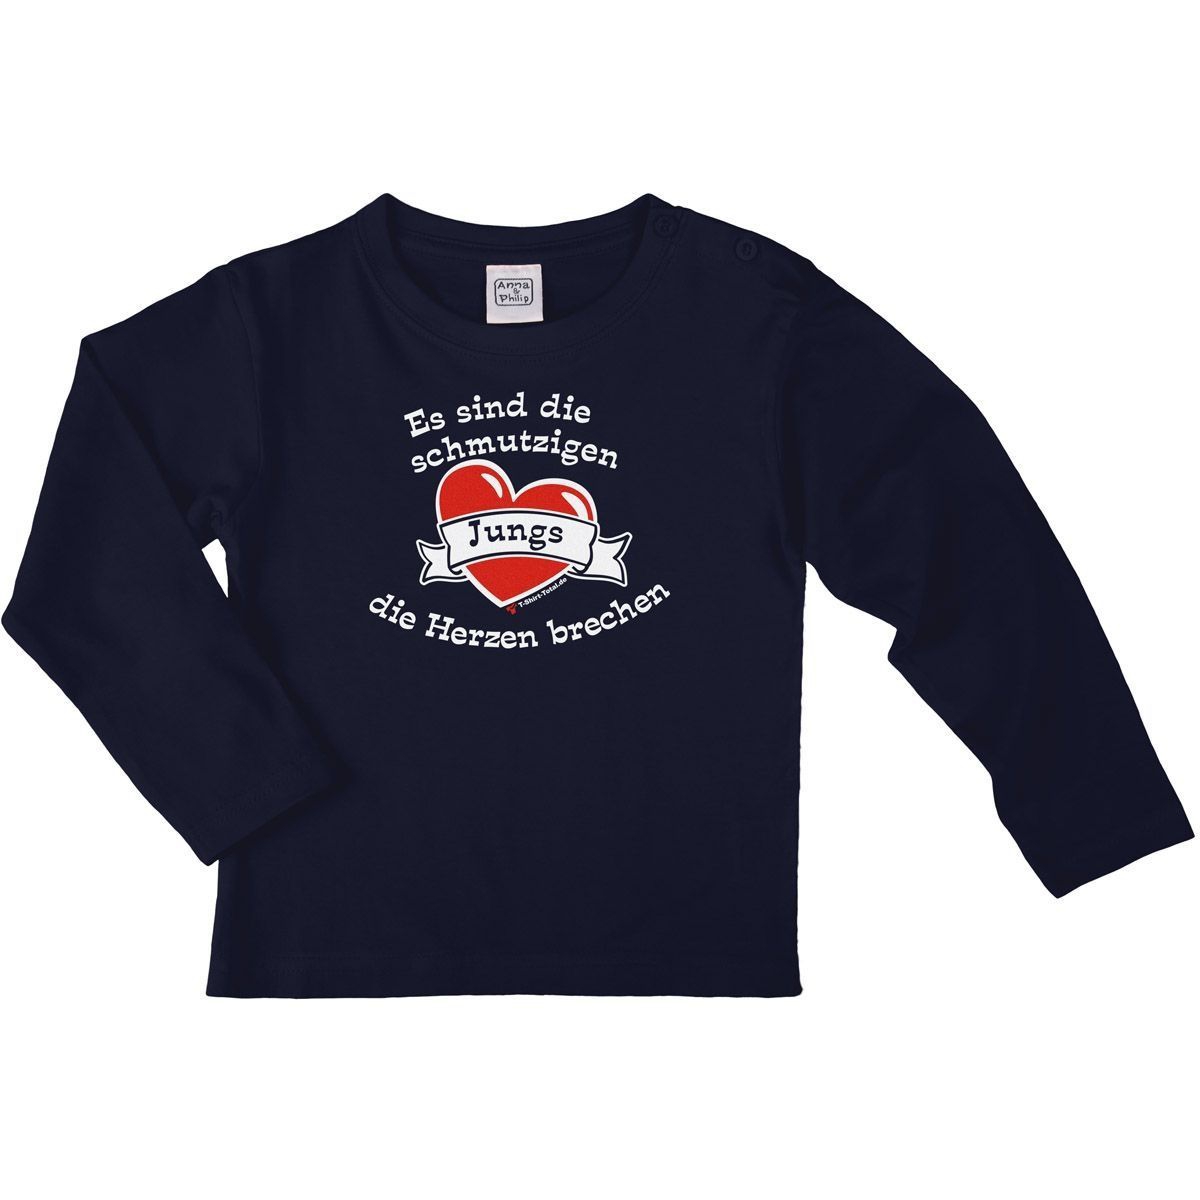 Schmutzige Jungs Kinder Langarm Shirt navy 122 / 128